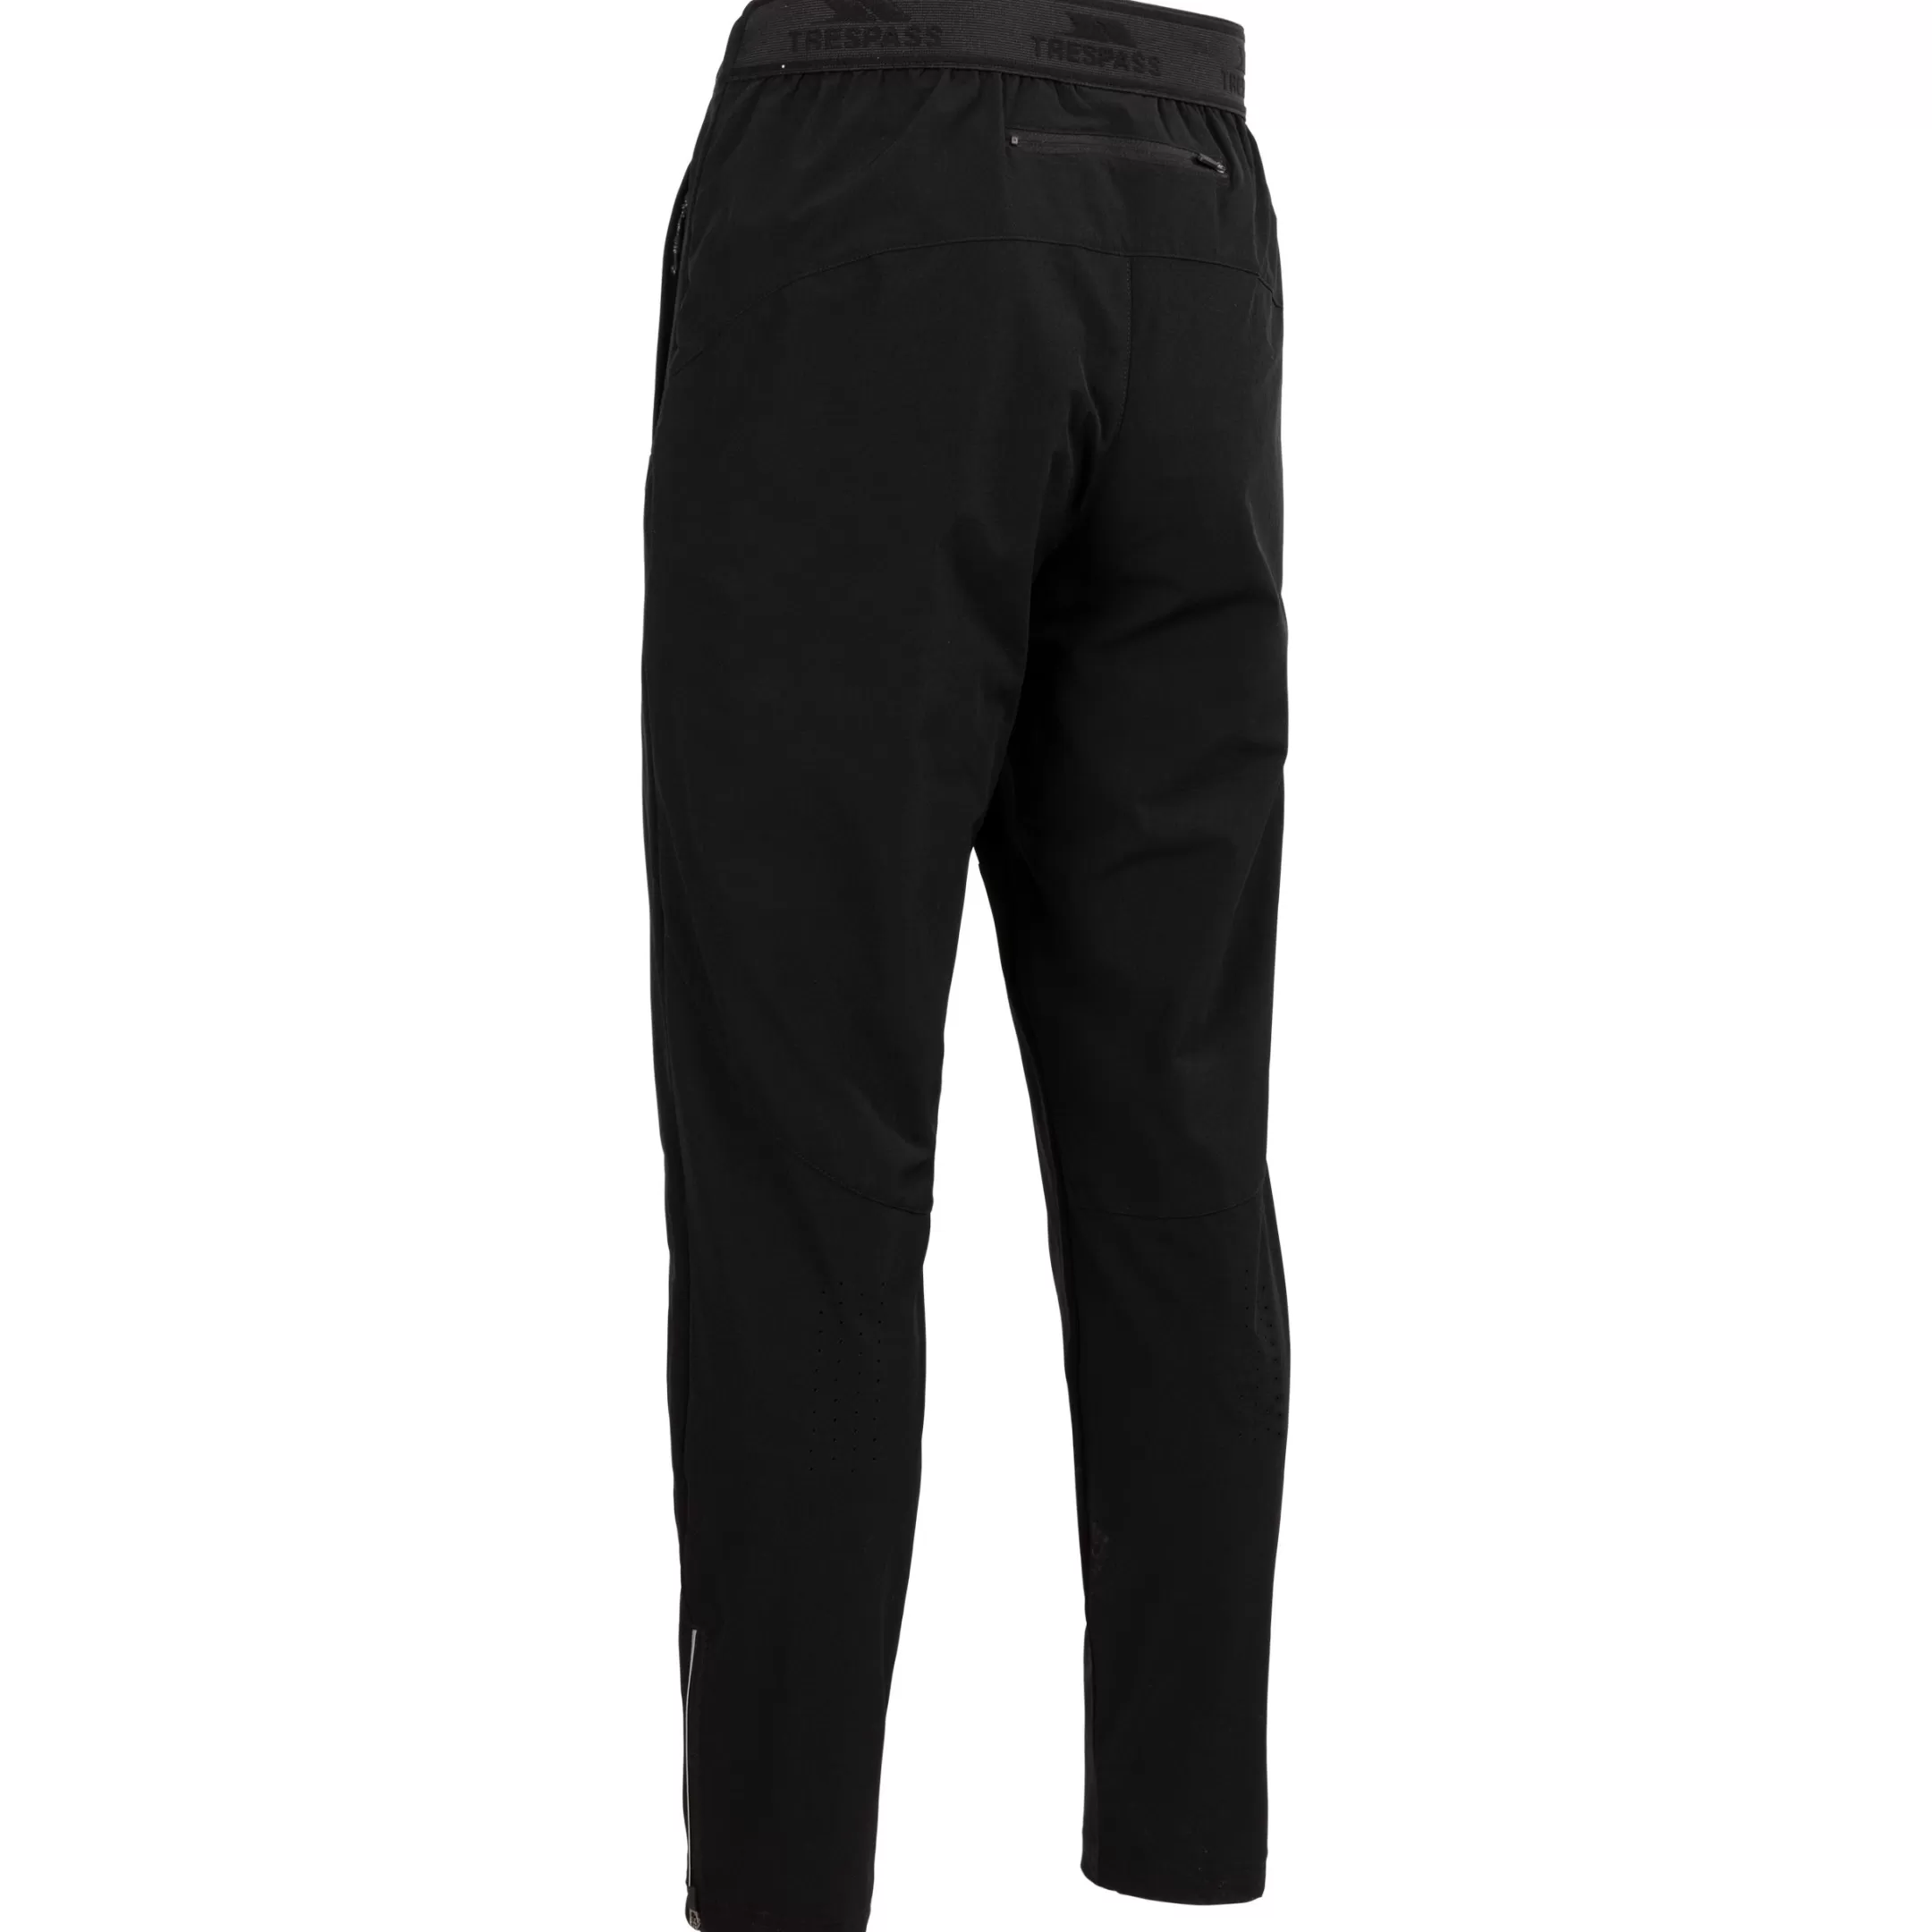 Men's Active Trousers TP75 Cliffmen | Trespass Flash Sale